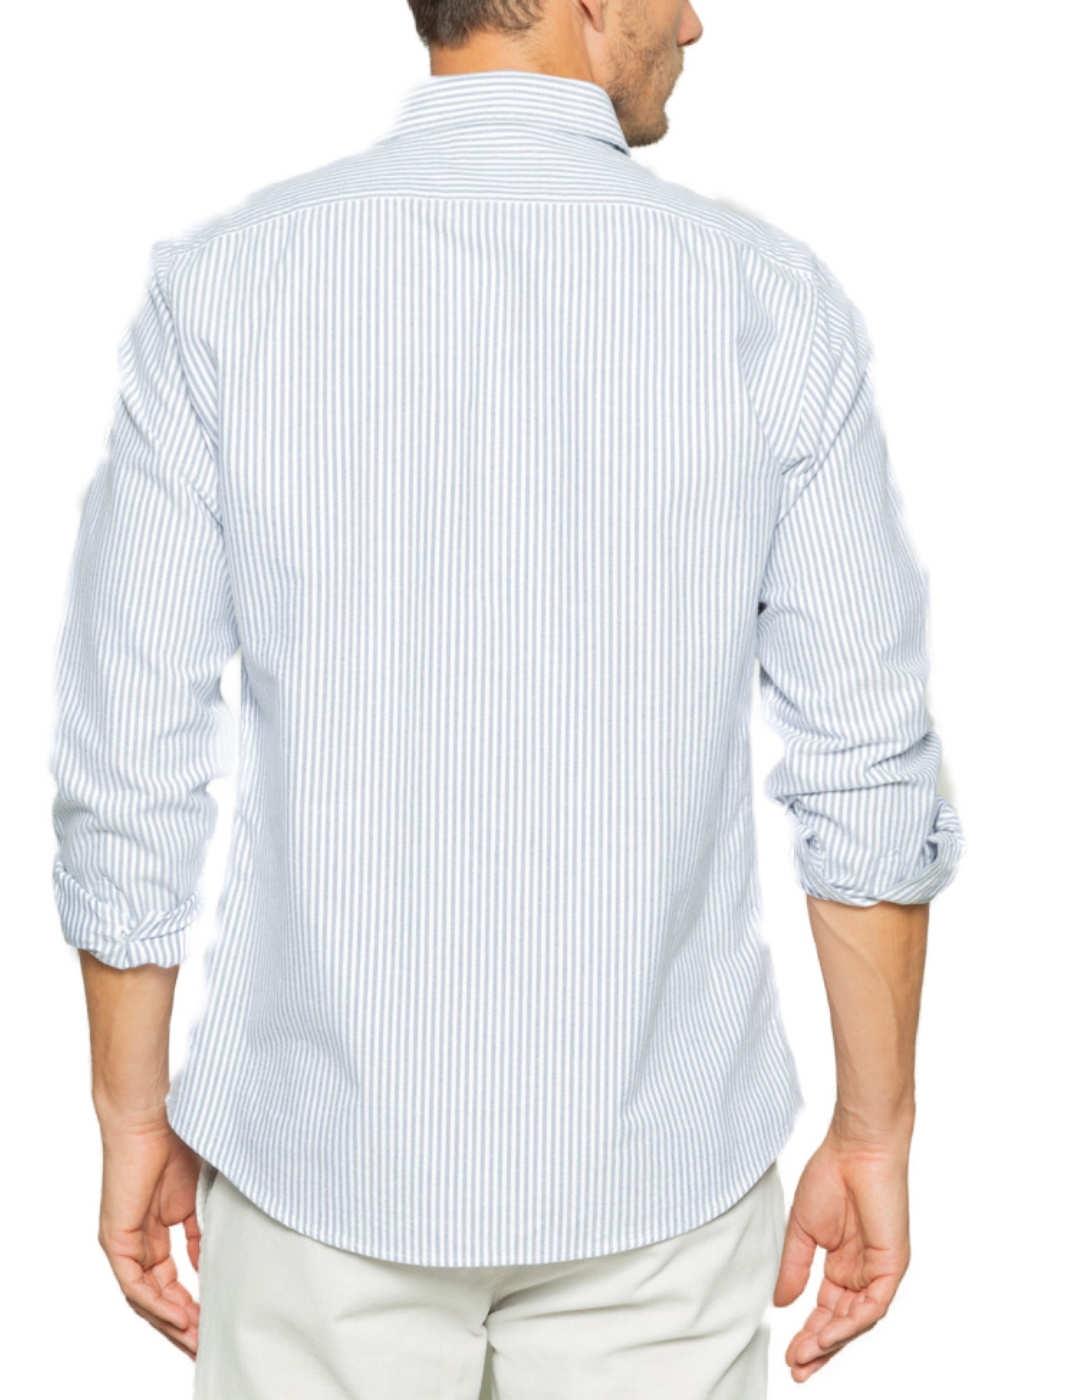 Camisa Scotta Oxford regular a rayas azul y blanco de hombre